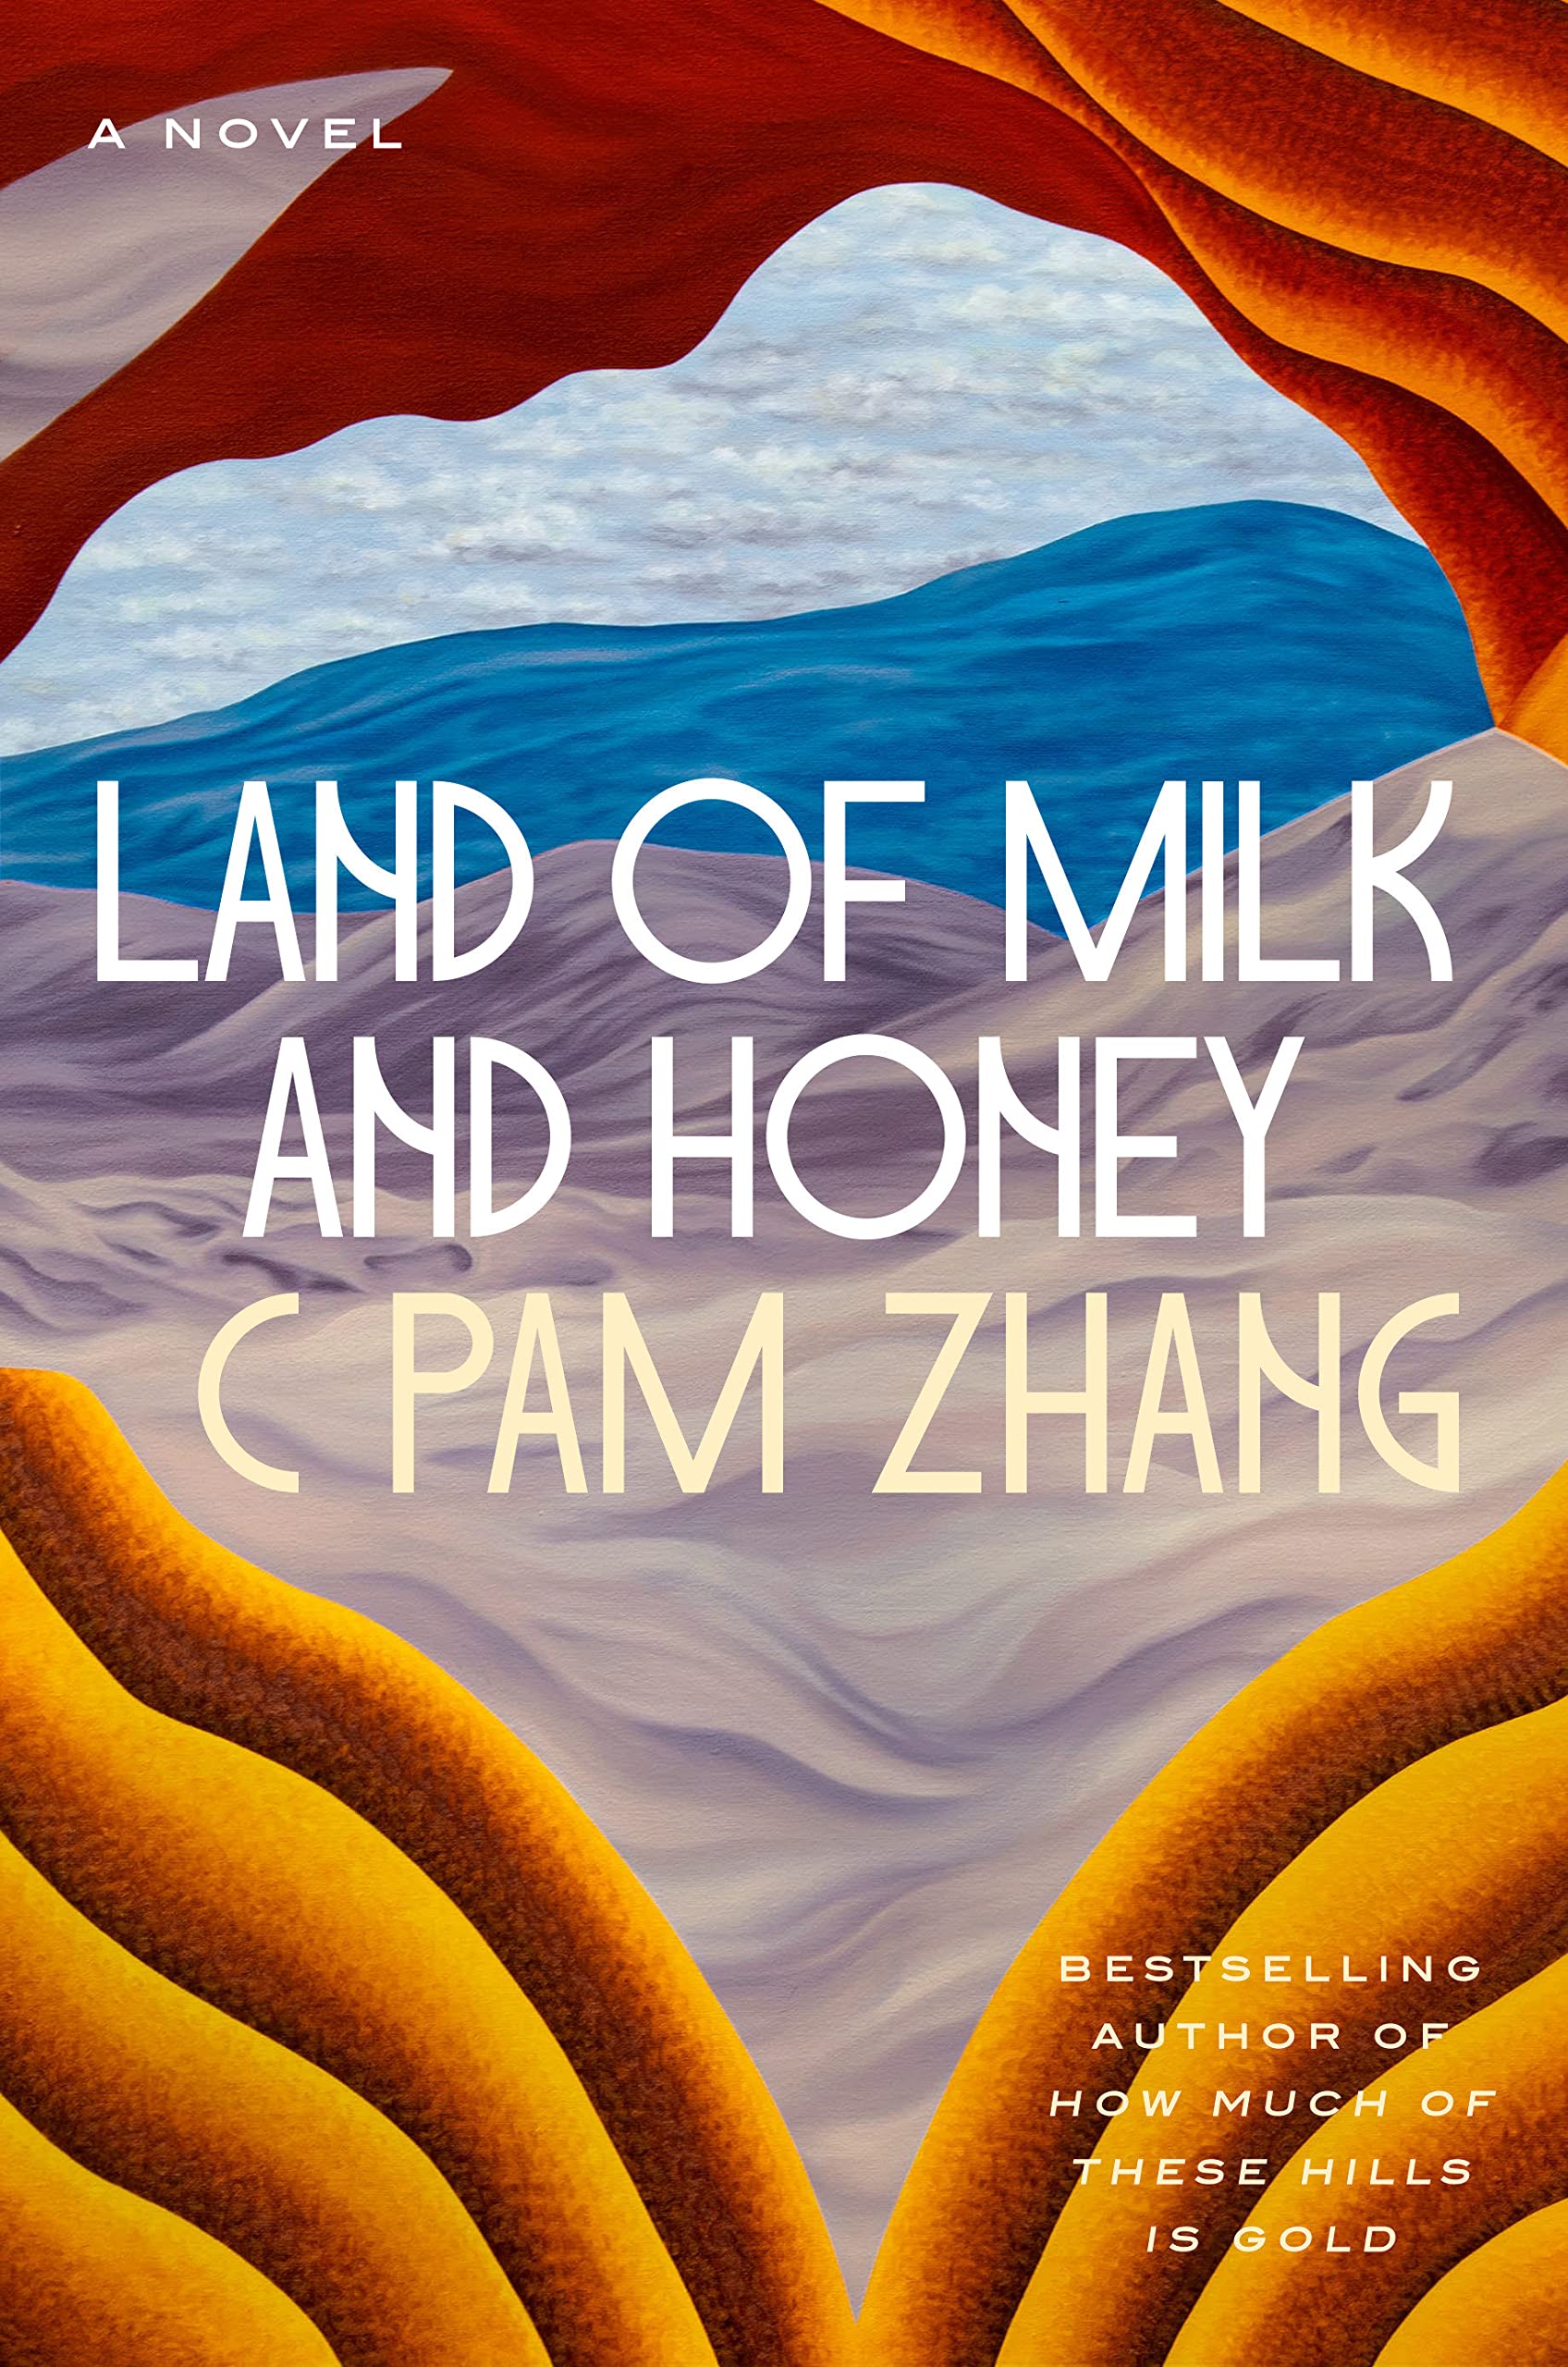 Terra de leite e mel ‹ Eixo literário